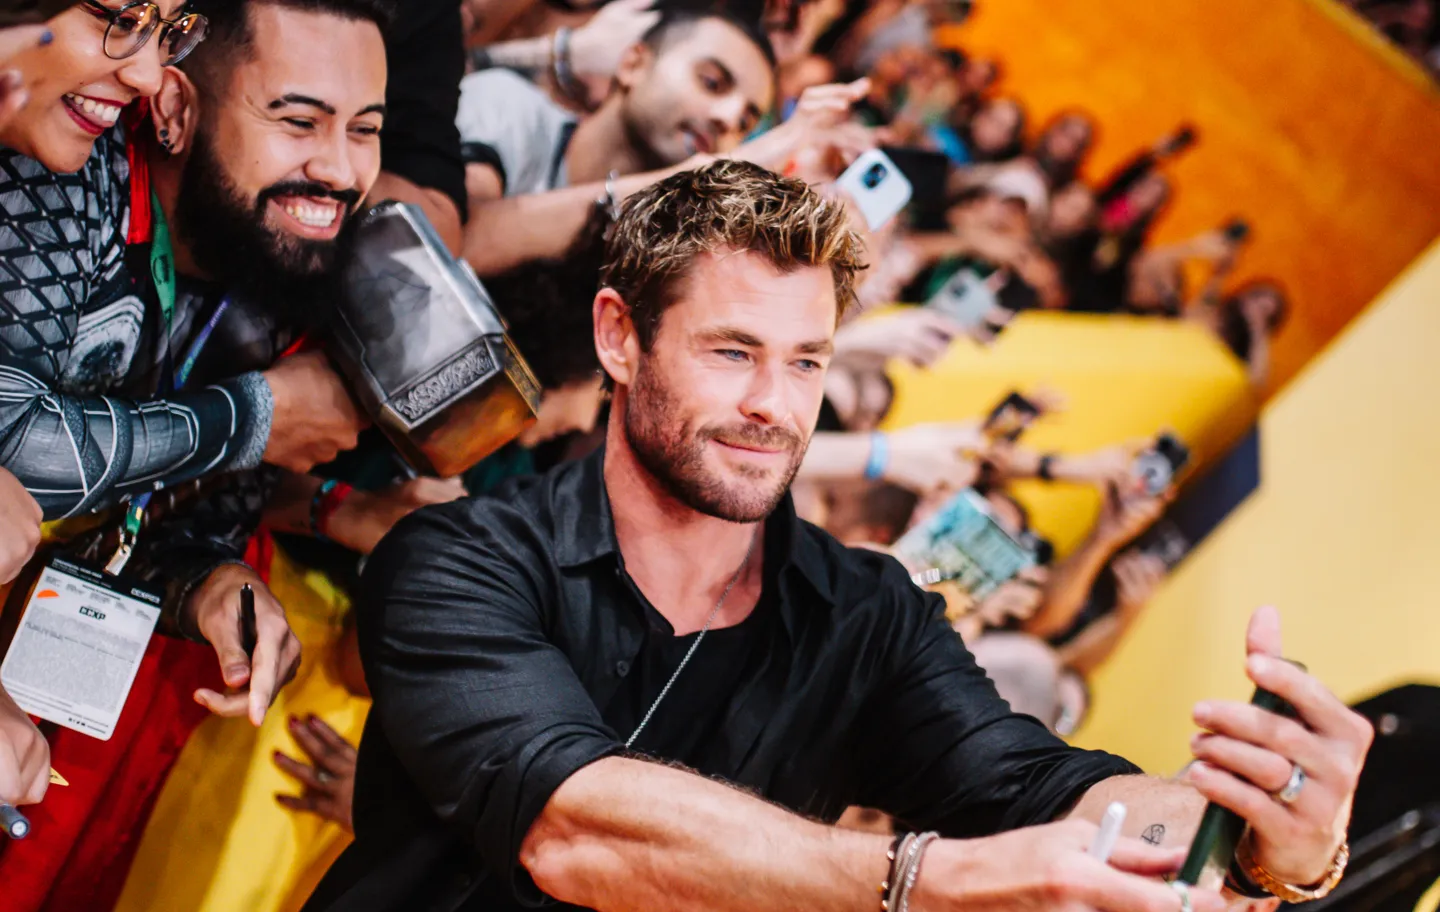 Chris Hemsworth afirma que viverá Thor até ser 'expulso